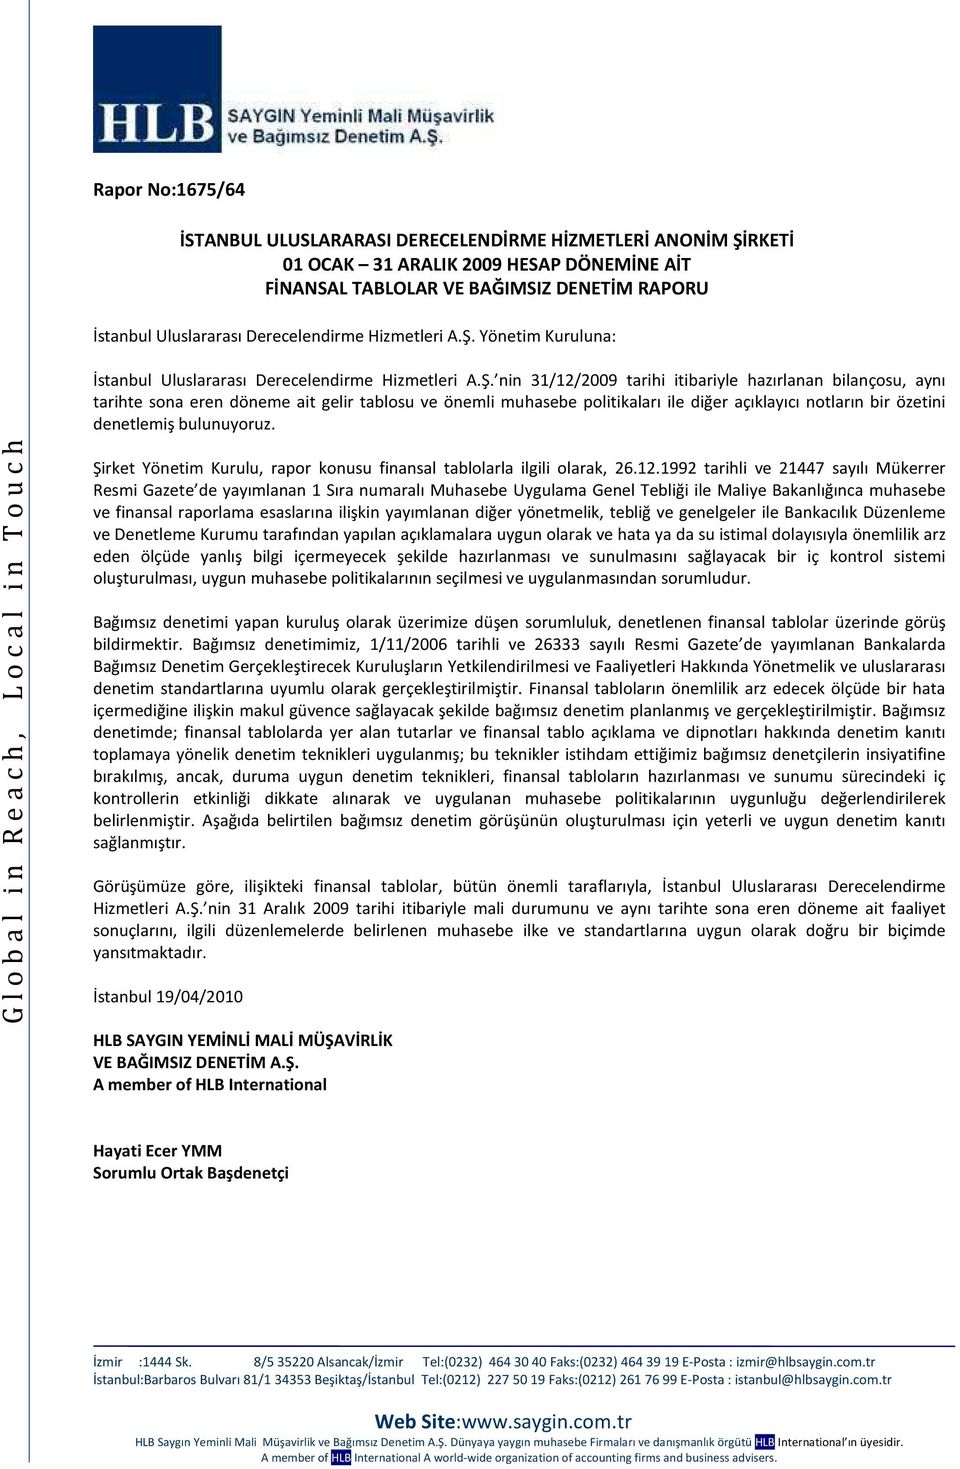 Yönetim Kuruluna: İstanbul Uluslararası  nin 31/12/2009 tarihi itibariyle hazırlanan bilançosu, aynı tarihte sona eren döneme ait gelir tablosu ve önemli muhasebe politikaları ile diğer açıklayıcı